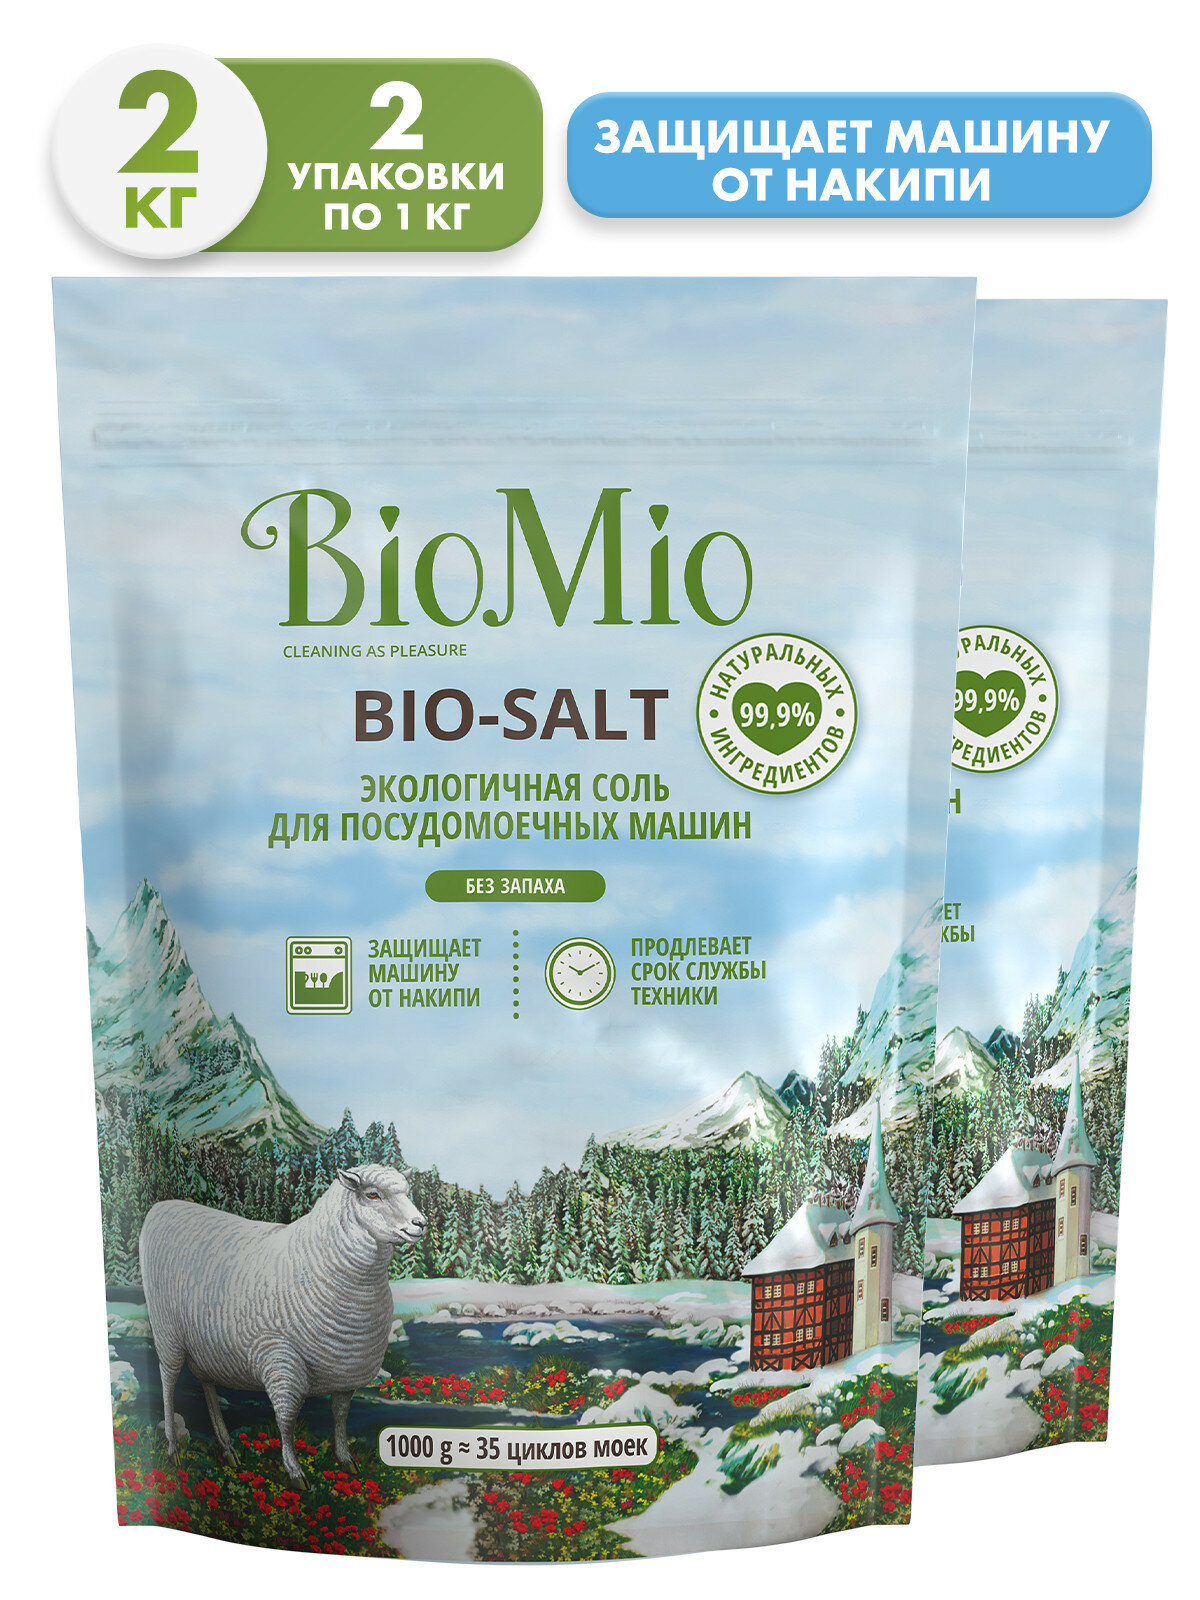 BioMio BIO-SALT Экологичная соль для посудомоечных машин / BioMio BIO-SALT Eco Dish Washer Salt 1000 г (2 )